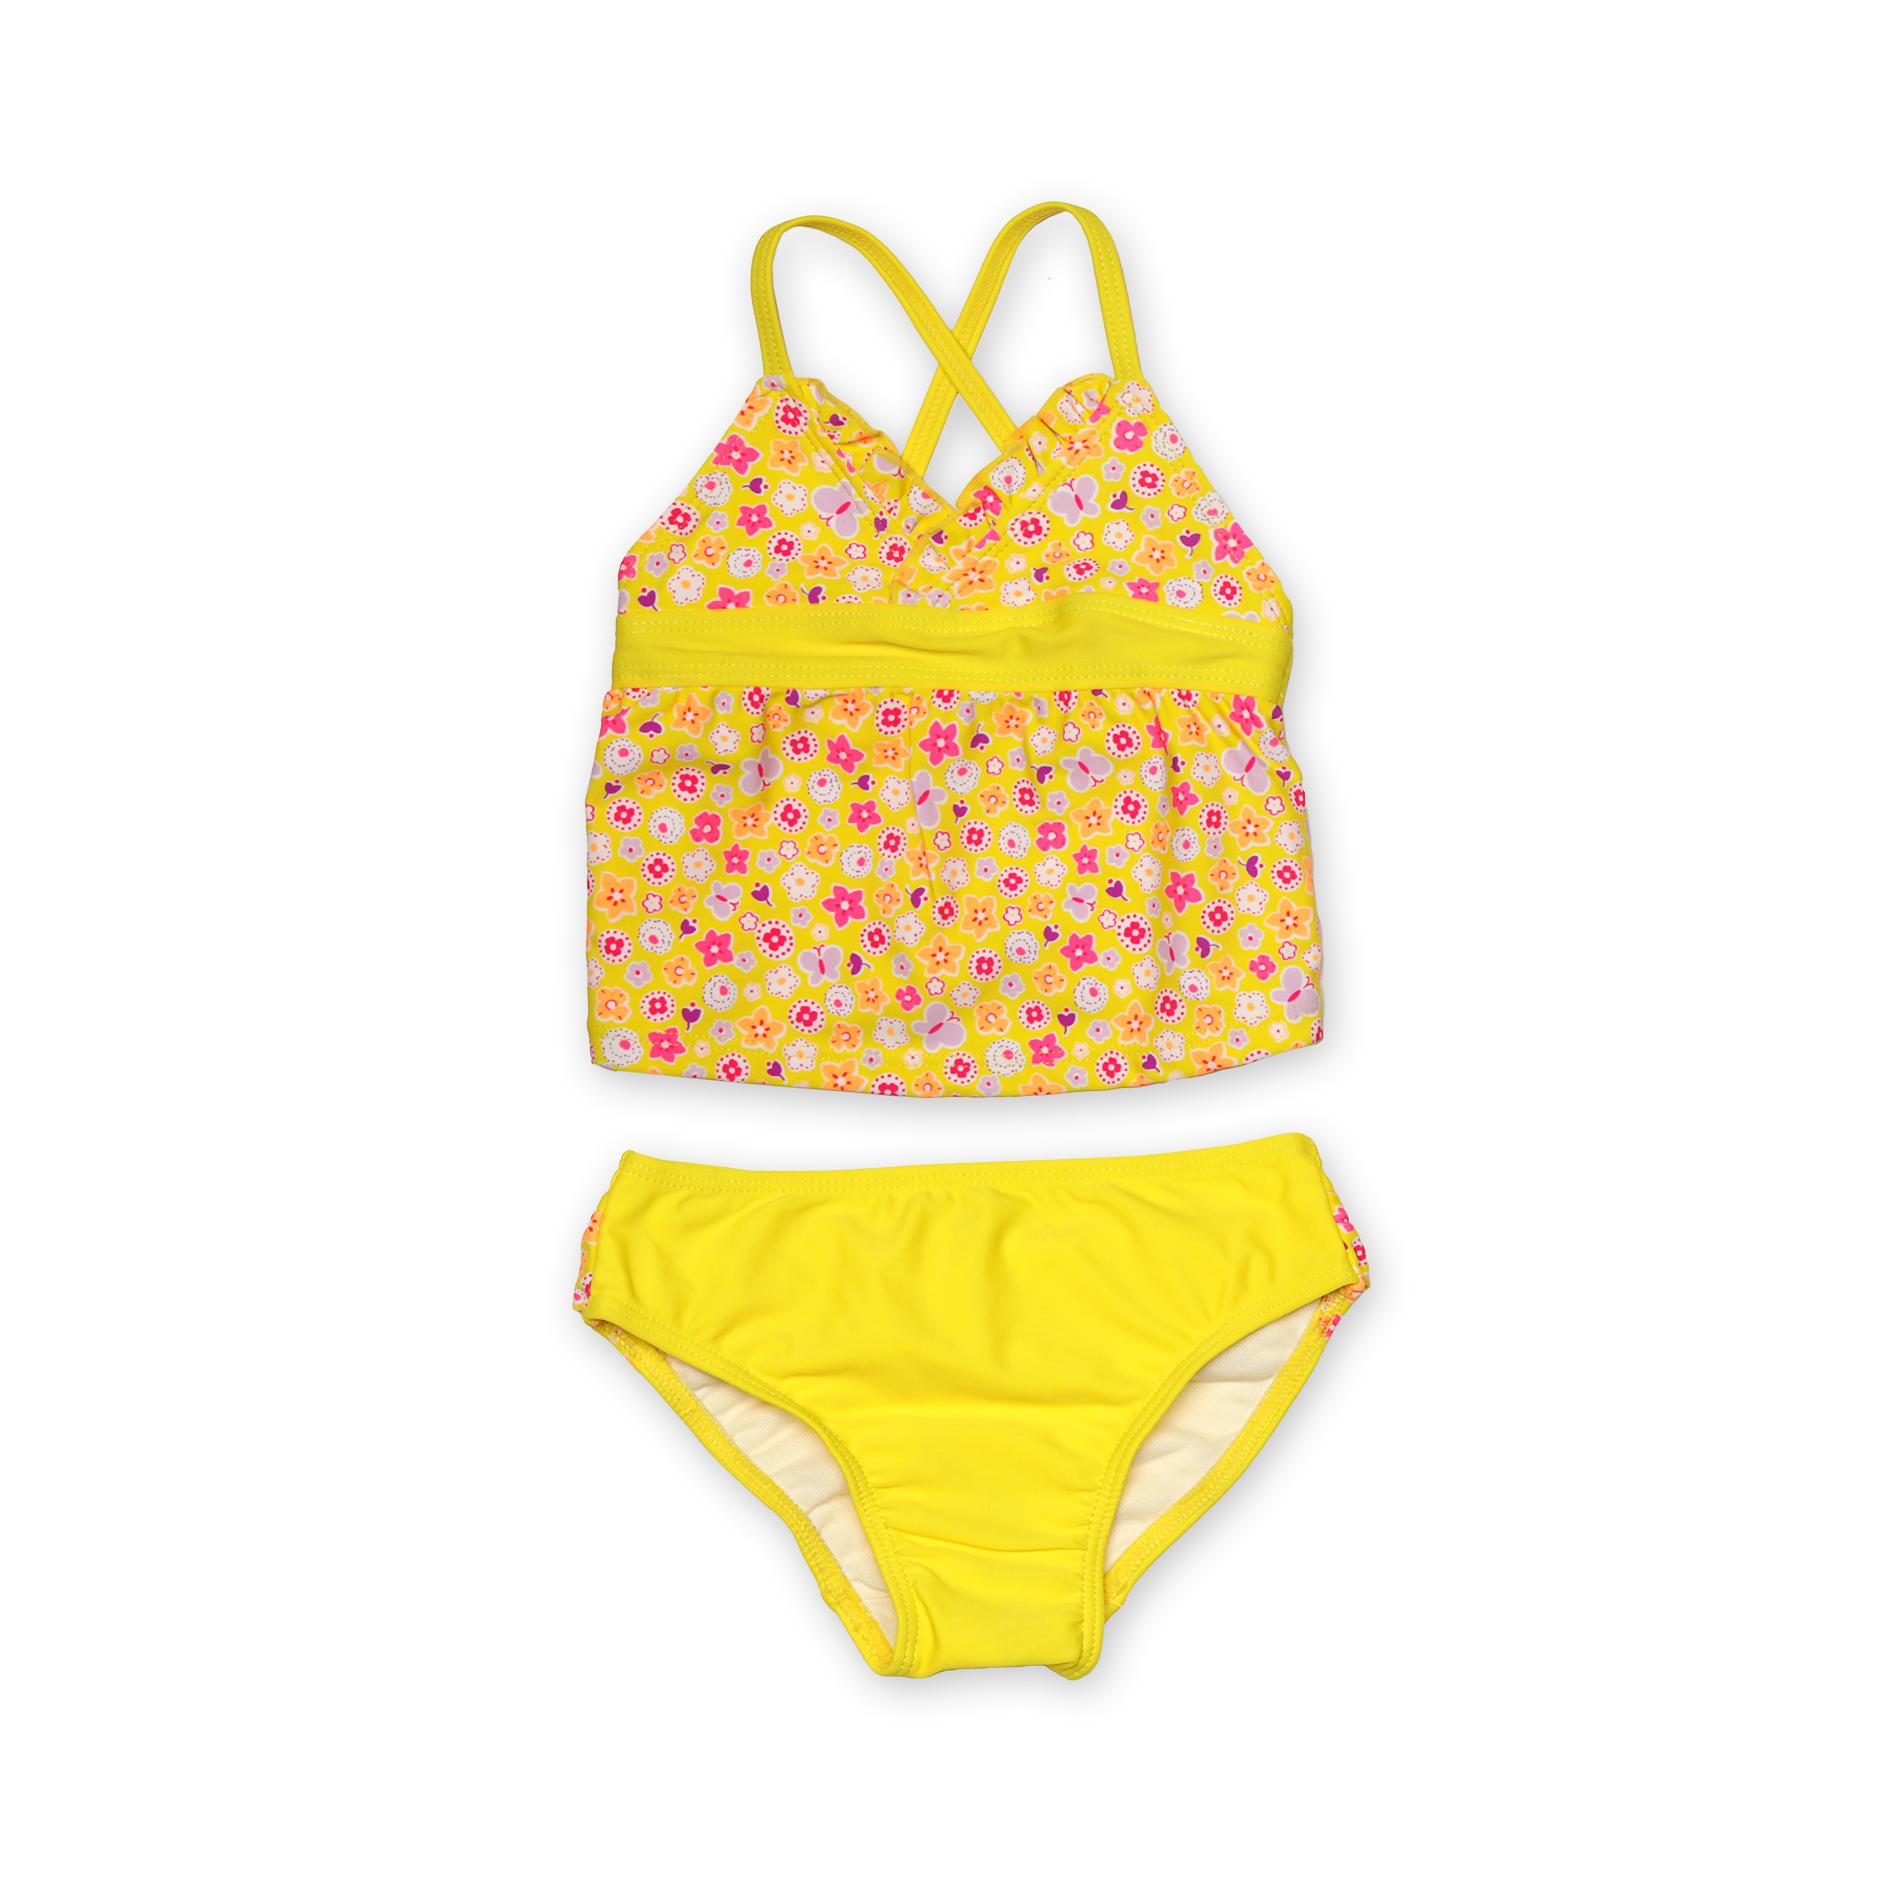 Joe Boxer Infant & Toddler Girl's Ruffled Bikini - Flowers